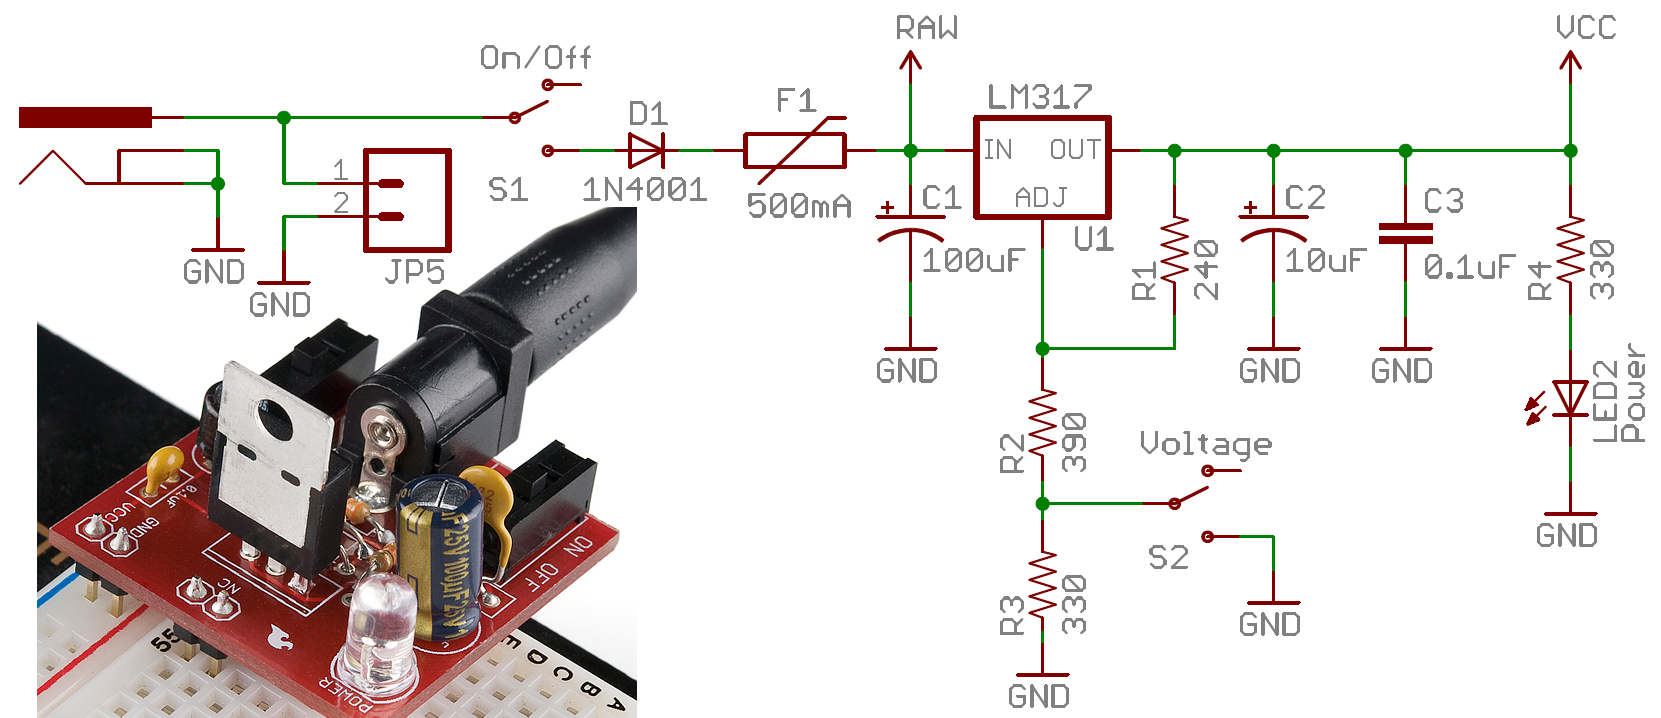 Spst Relay Schematic Symbol Dpdt Switch Symbol Dpdt Switch Schematic | electrical wiring diagram ...